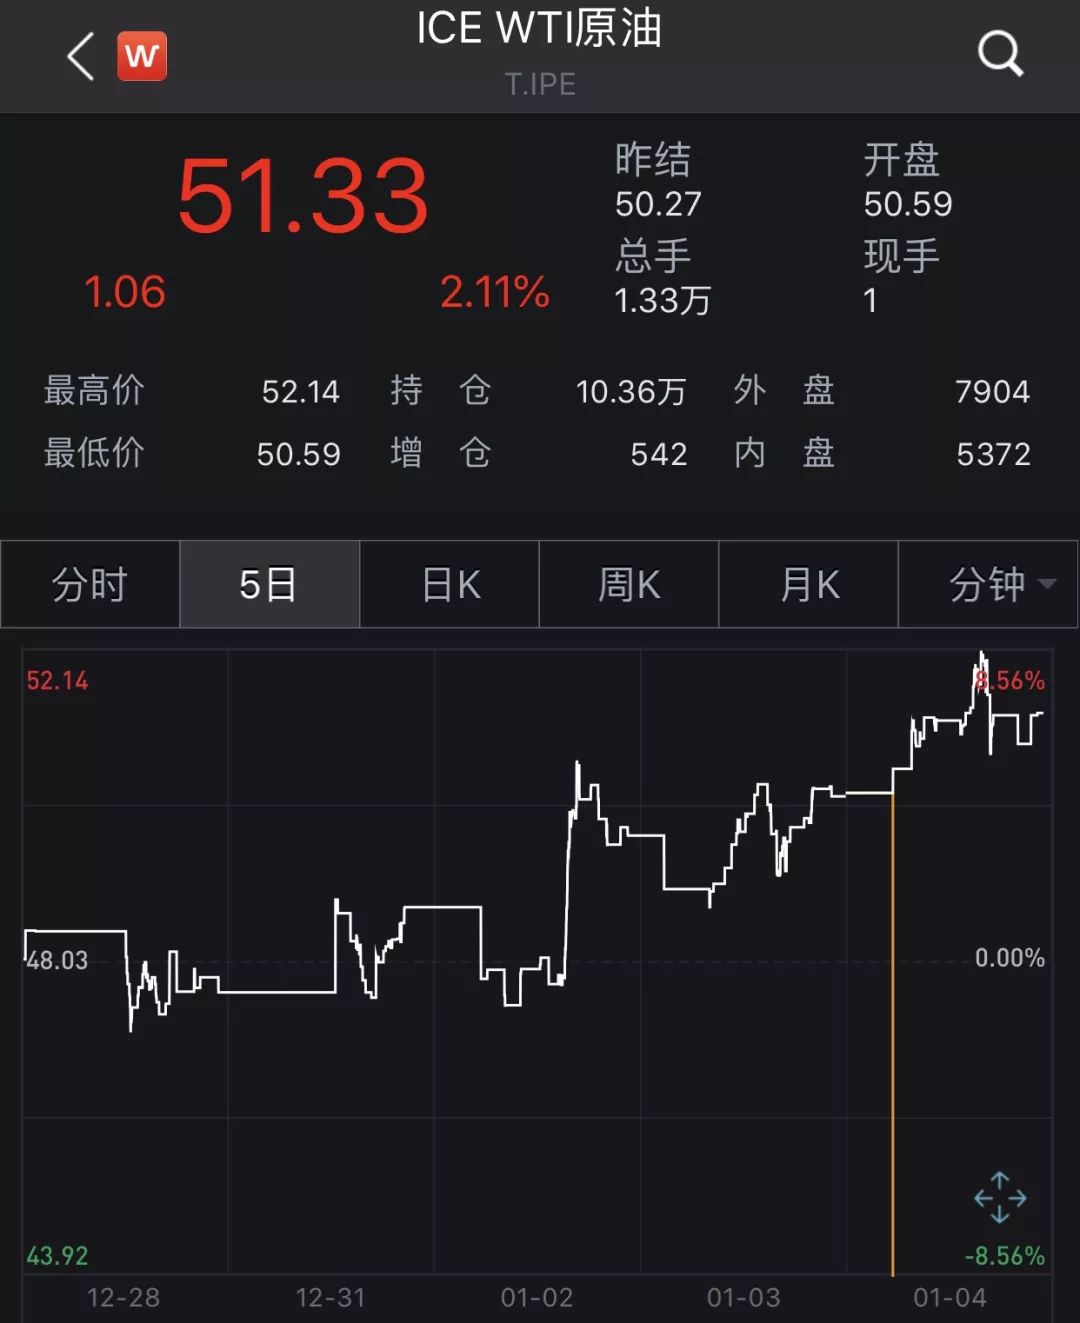  阿里 巴巴、搜狐等涨逾7%